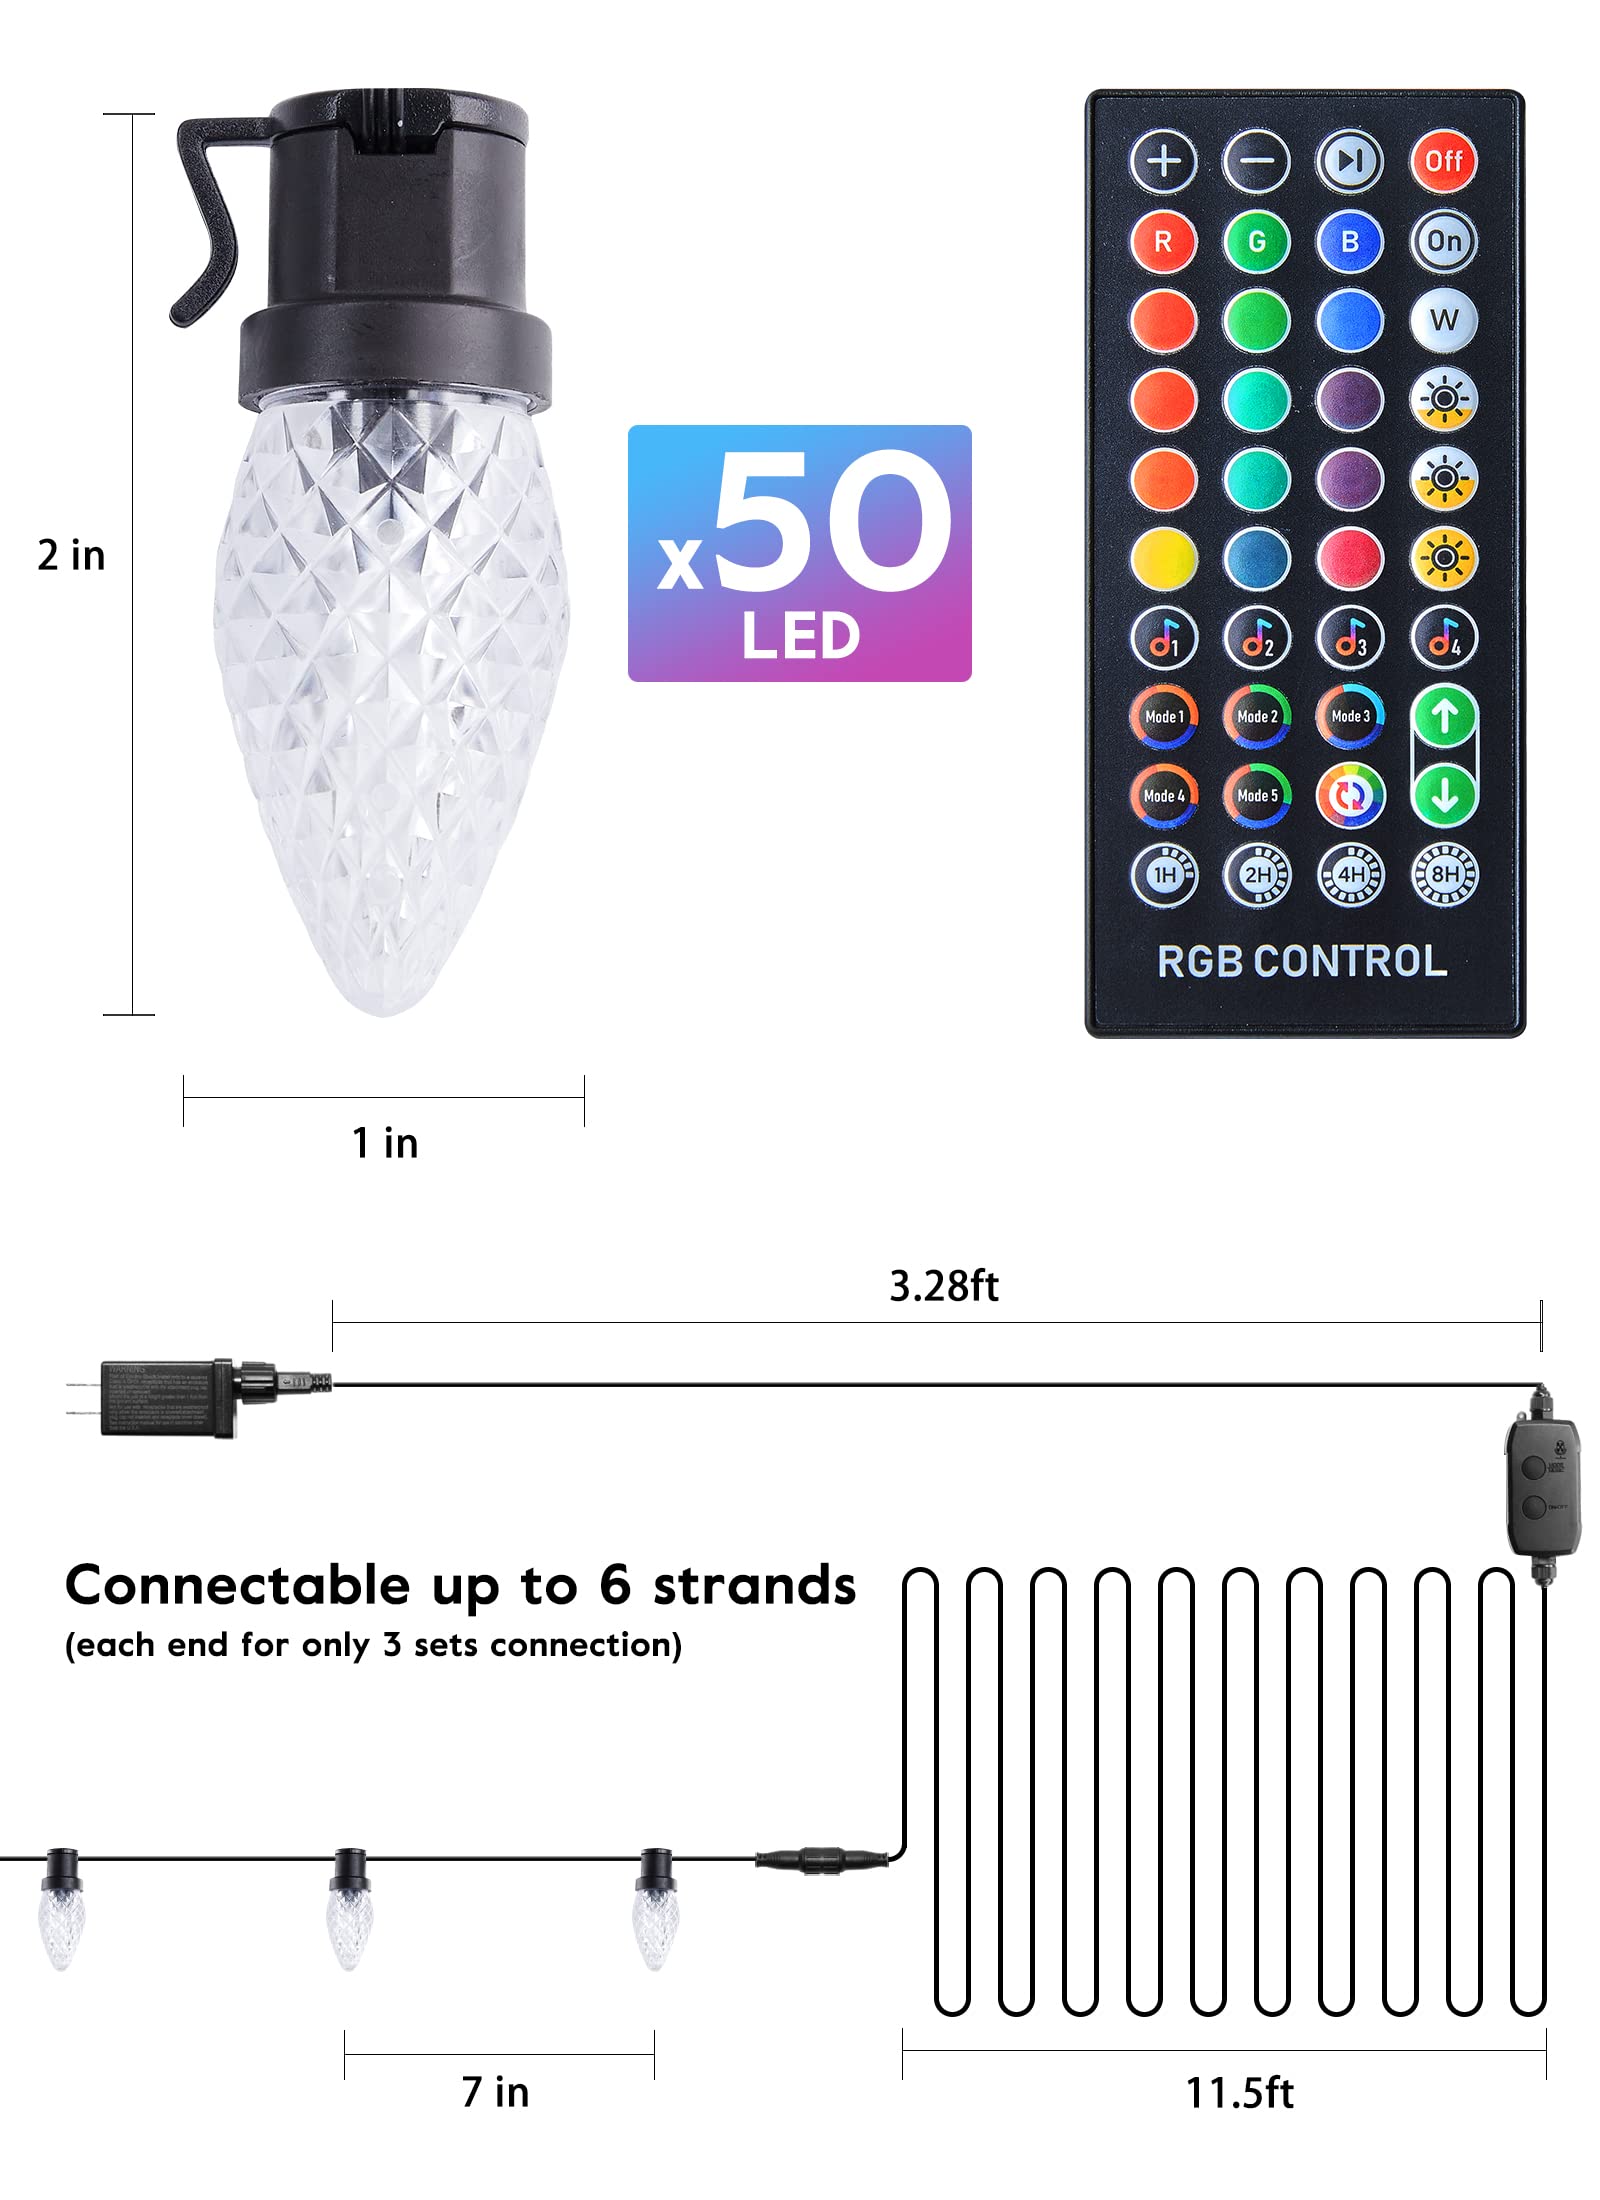 33 Feet / 50 LED / RGB